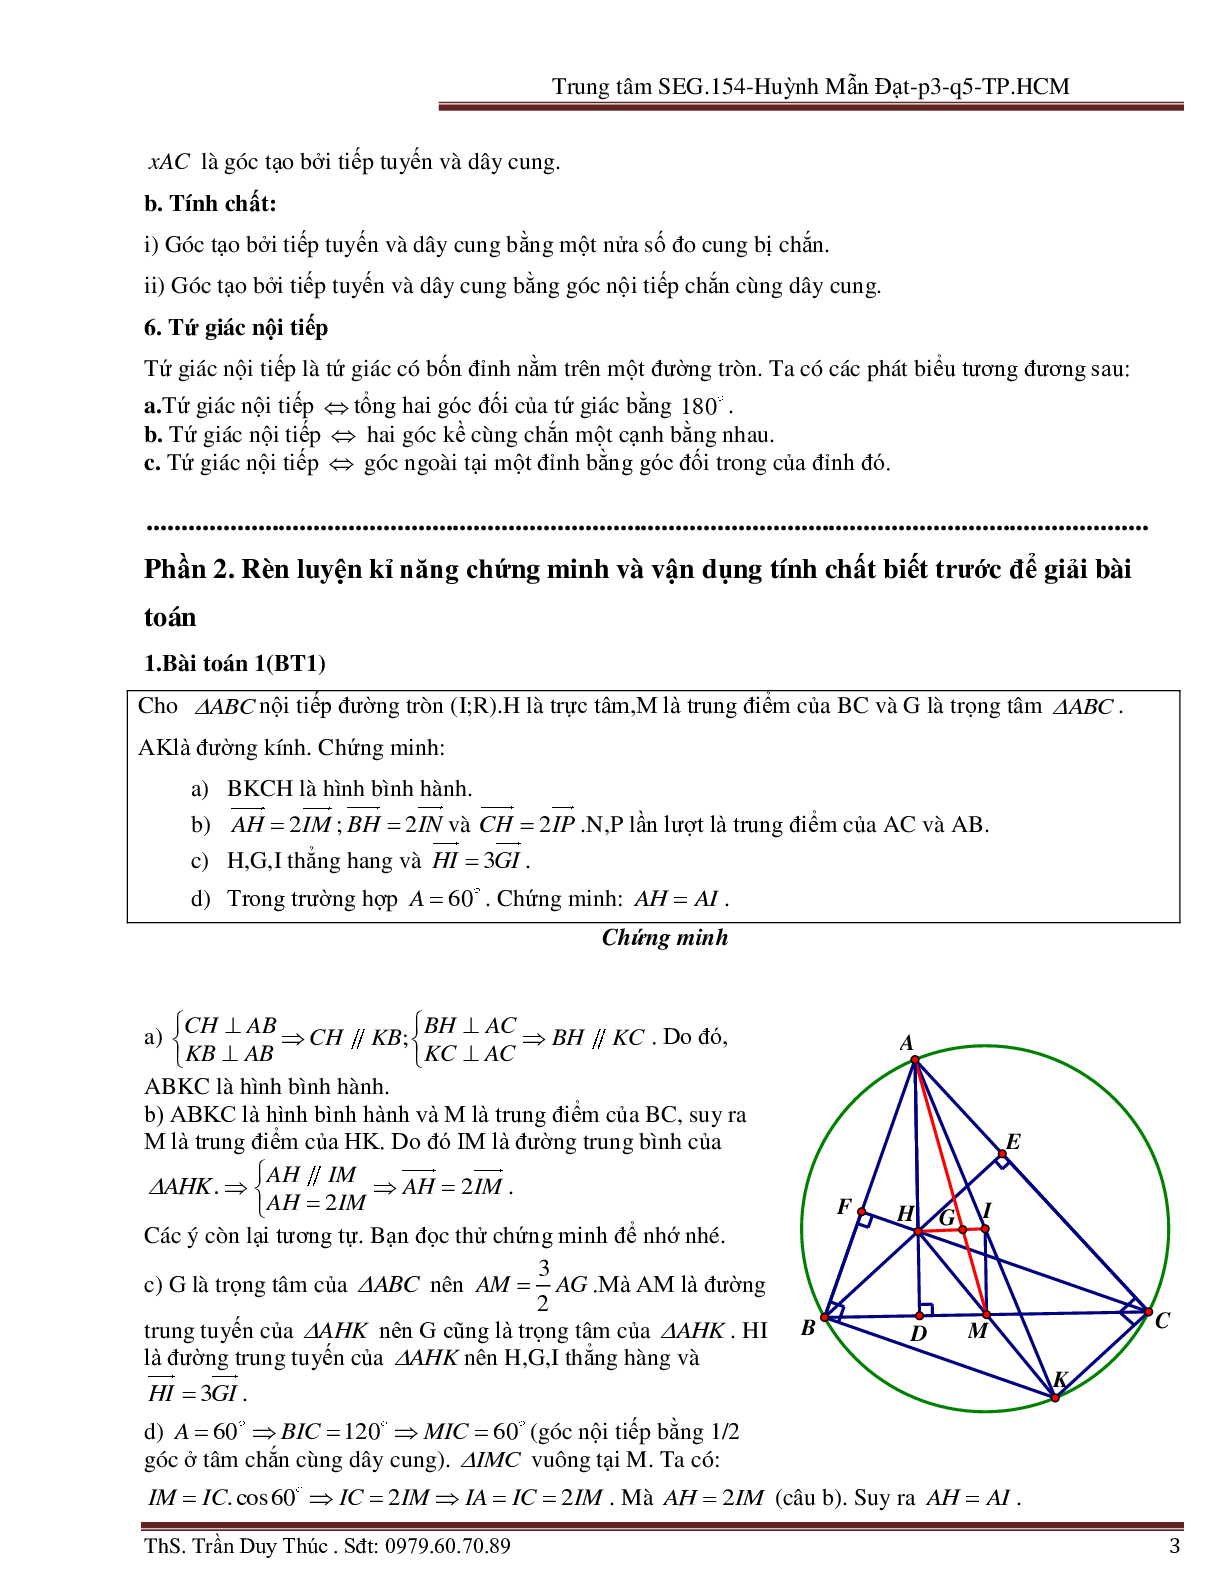 Vận dụng tính chất hình phẳng để giải bài toán Oxy liên quan đến đường tròn (trang 3)